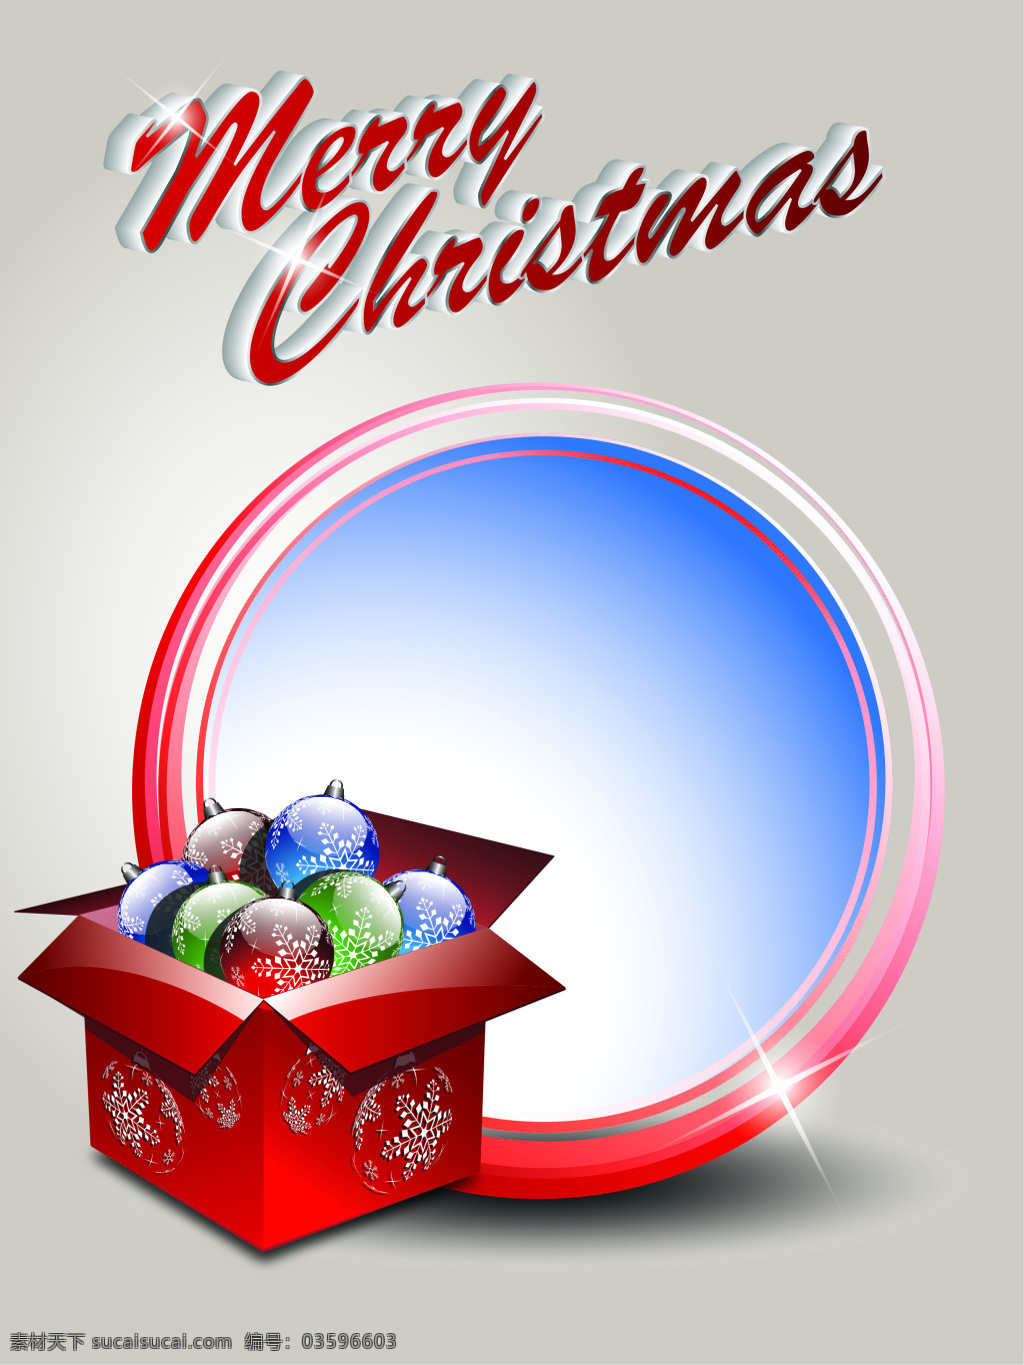 矢量 创意 圣诞 礼物 盒 背景 礼物盒 彩球 促销 海报 卡通 童趣 手绘